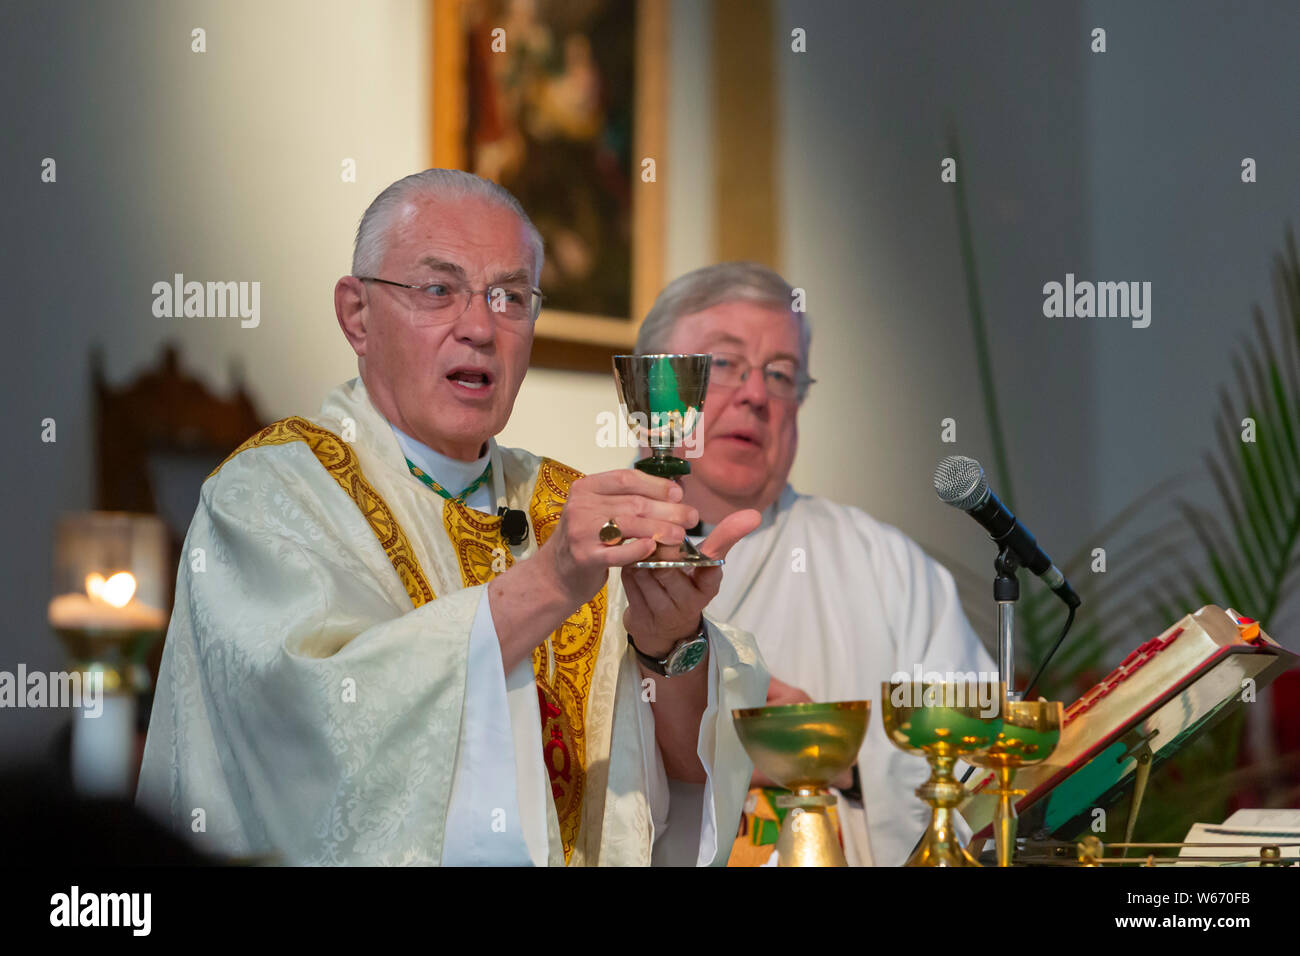 Detroit, Michigan - une messe catholique pour les familles d'immigrants qui sont séparés ou en détention. Mgr Donald Hanchon (à gauche) et Mgr. Charles Konsanke Banque D'Images